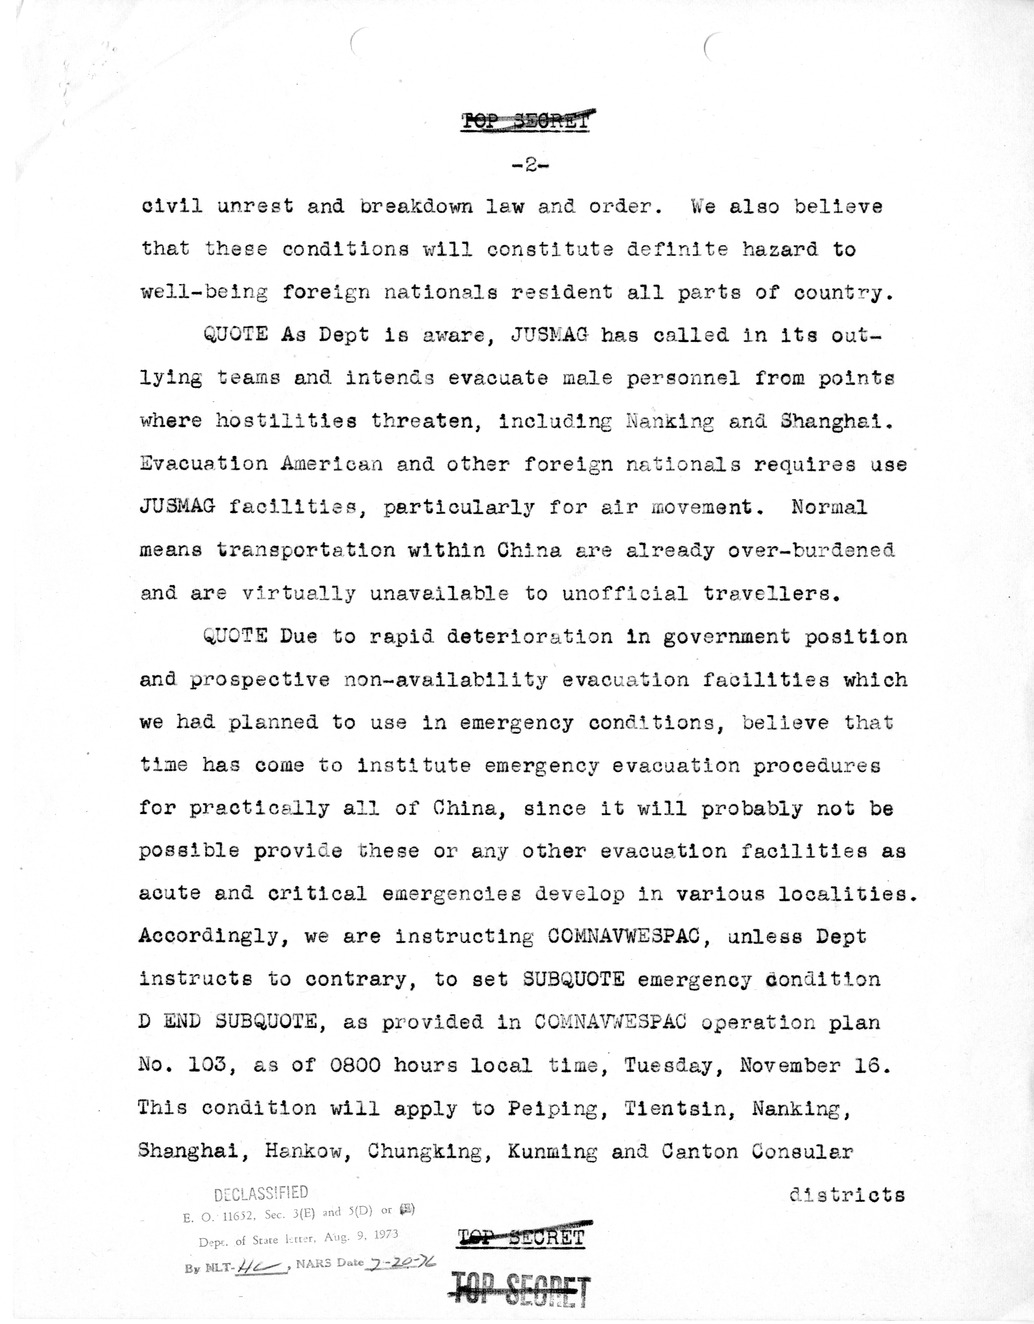 Telegram from Robert Lovett to Clark Clifford for Transmission to the President